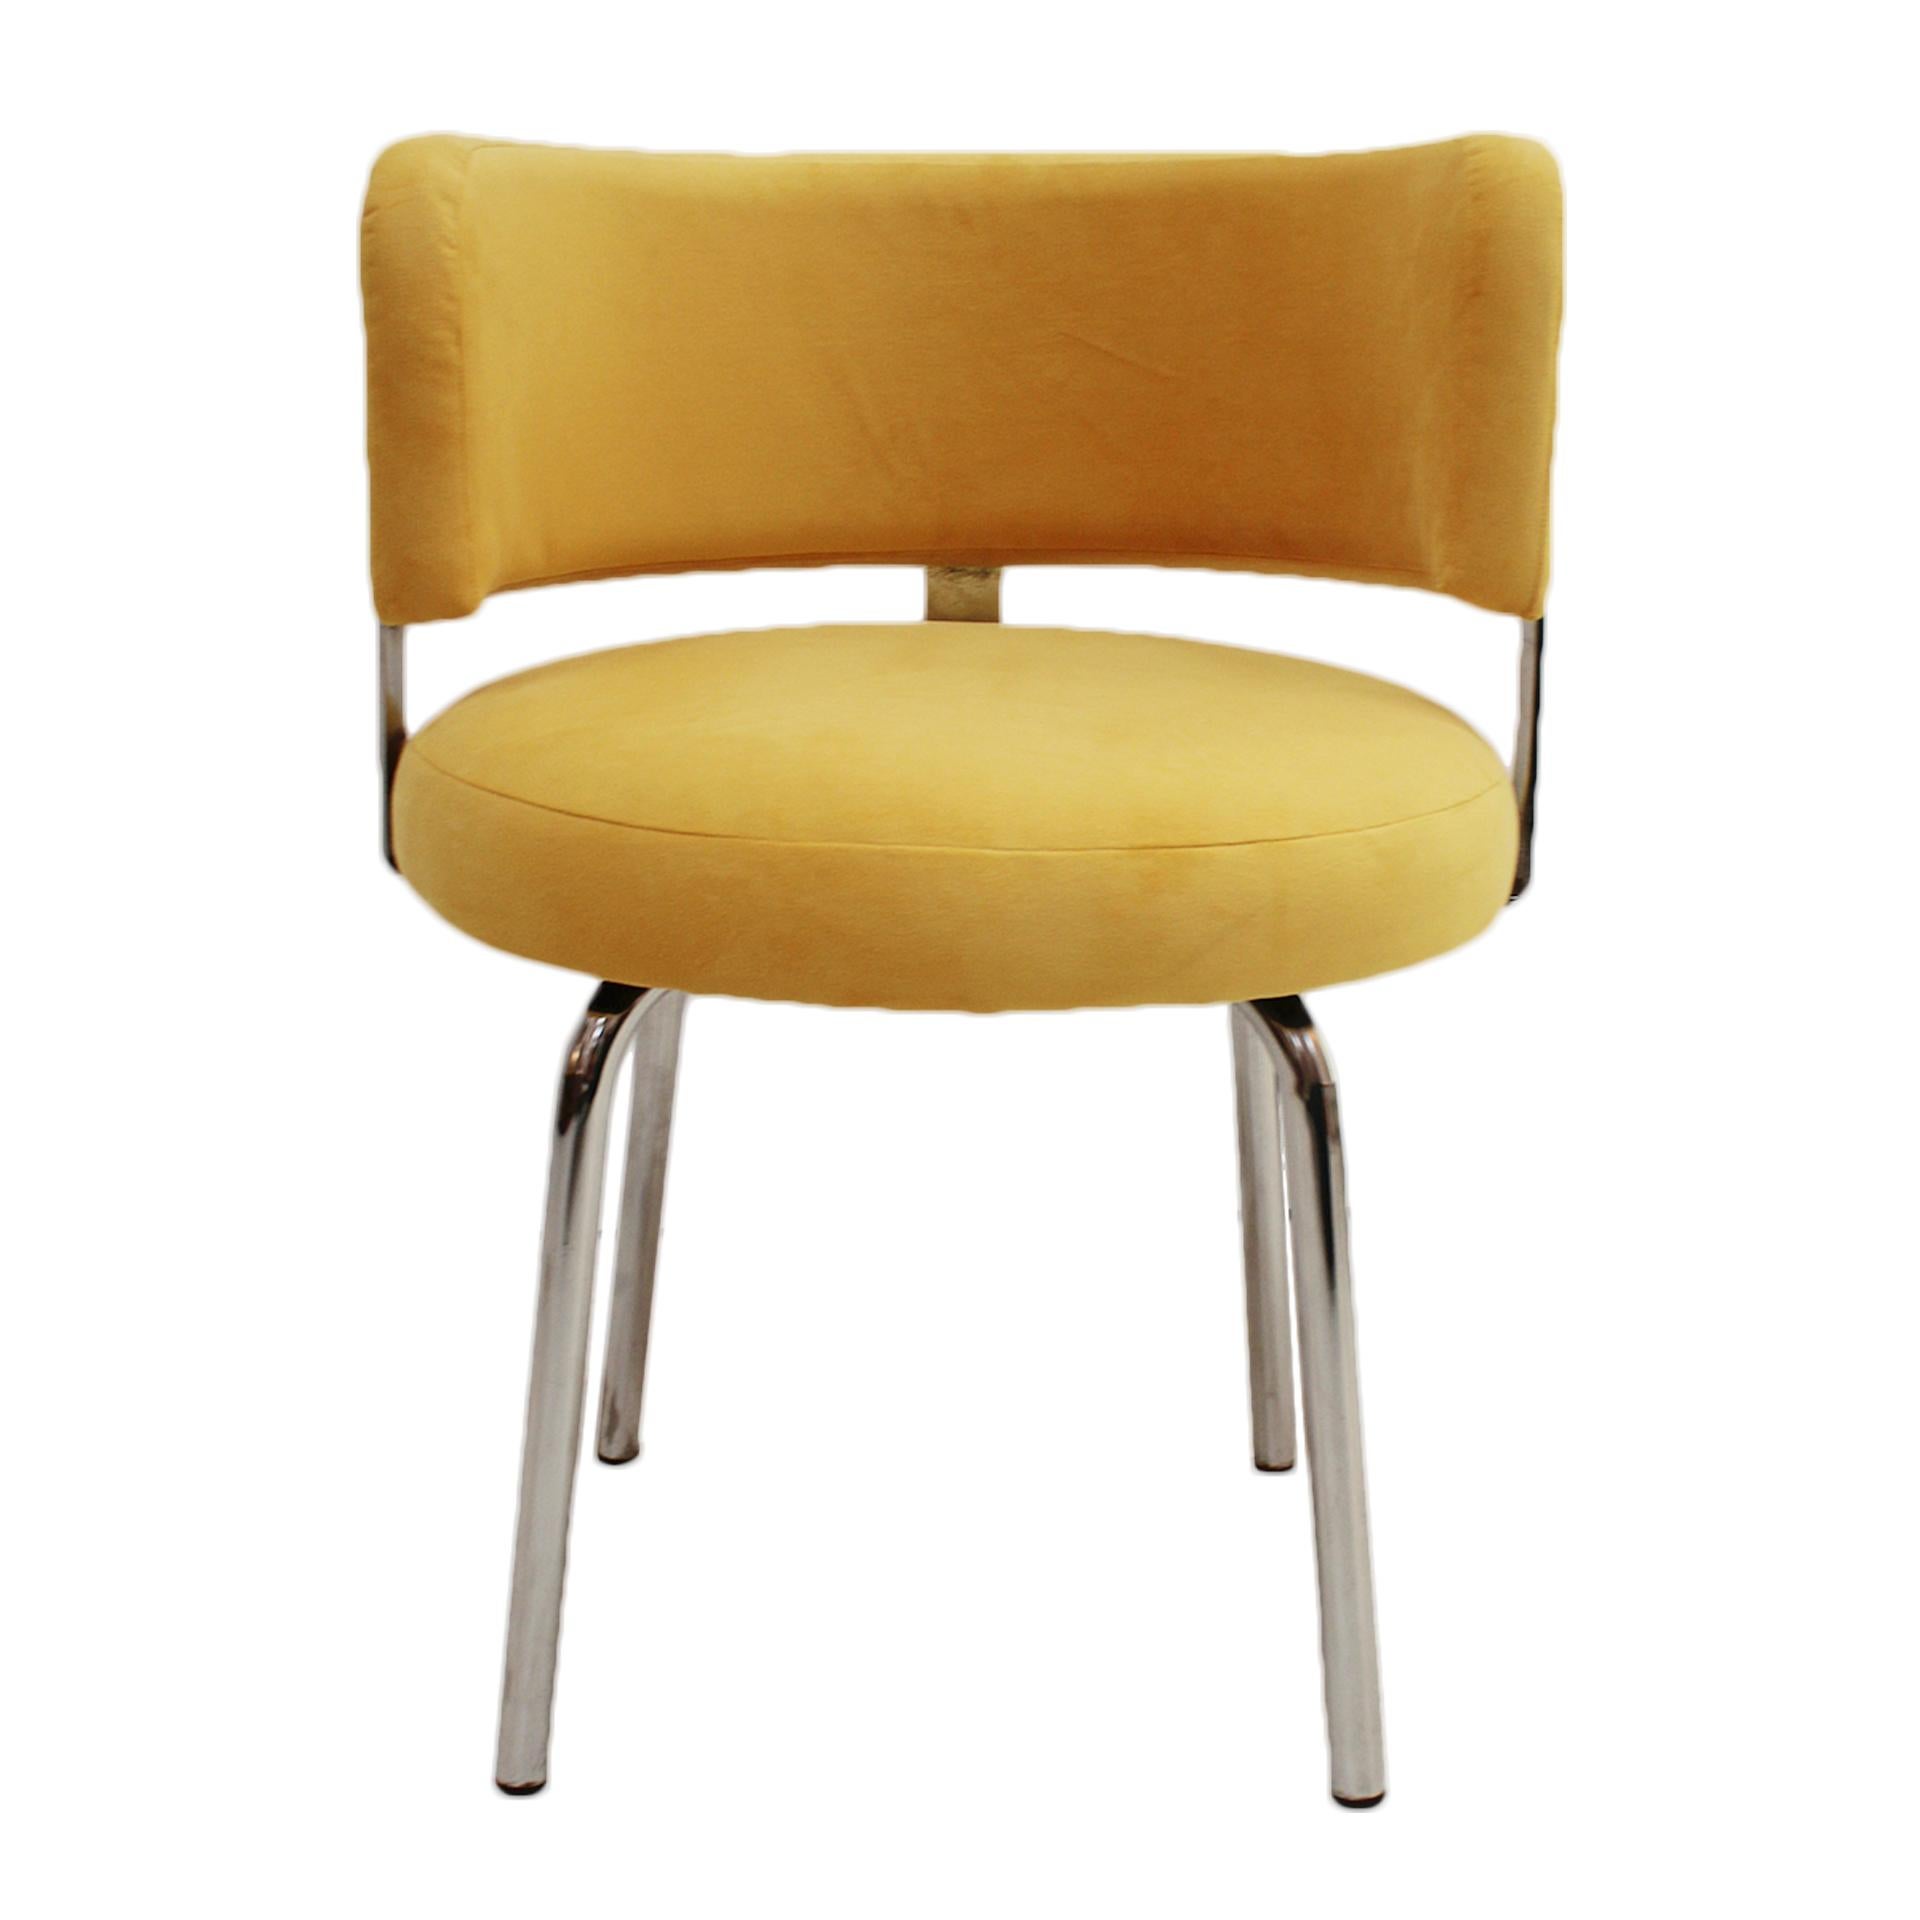 Ein Paar italienische Stühle im Bauhaus-Stil, hergestellt in den 70er Jahren für Pizzi Arredamenti. Rohrgestell aus Stahl, Sitz und Rückenlehne mit gelbem Baumwollsamt gepolstert.

Pizzi Industries war eine Möbelfabrik in Borgosesia, einer Gemeinde